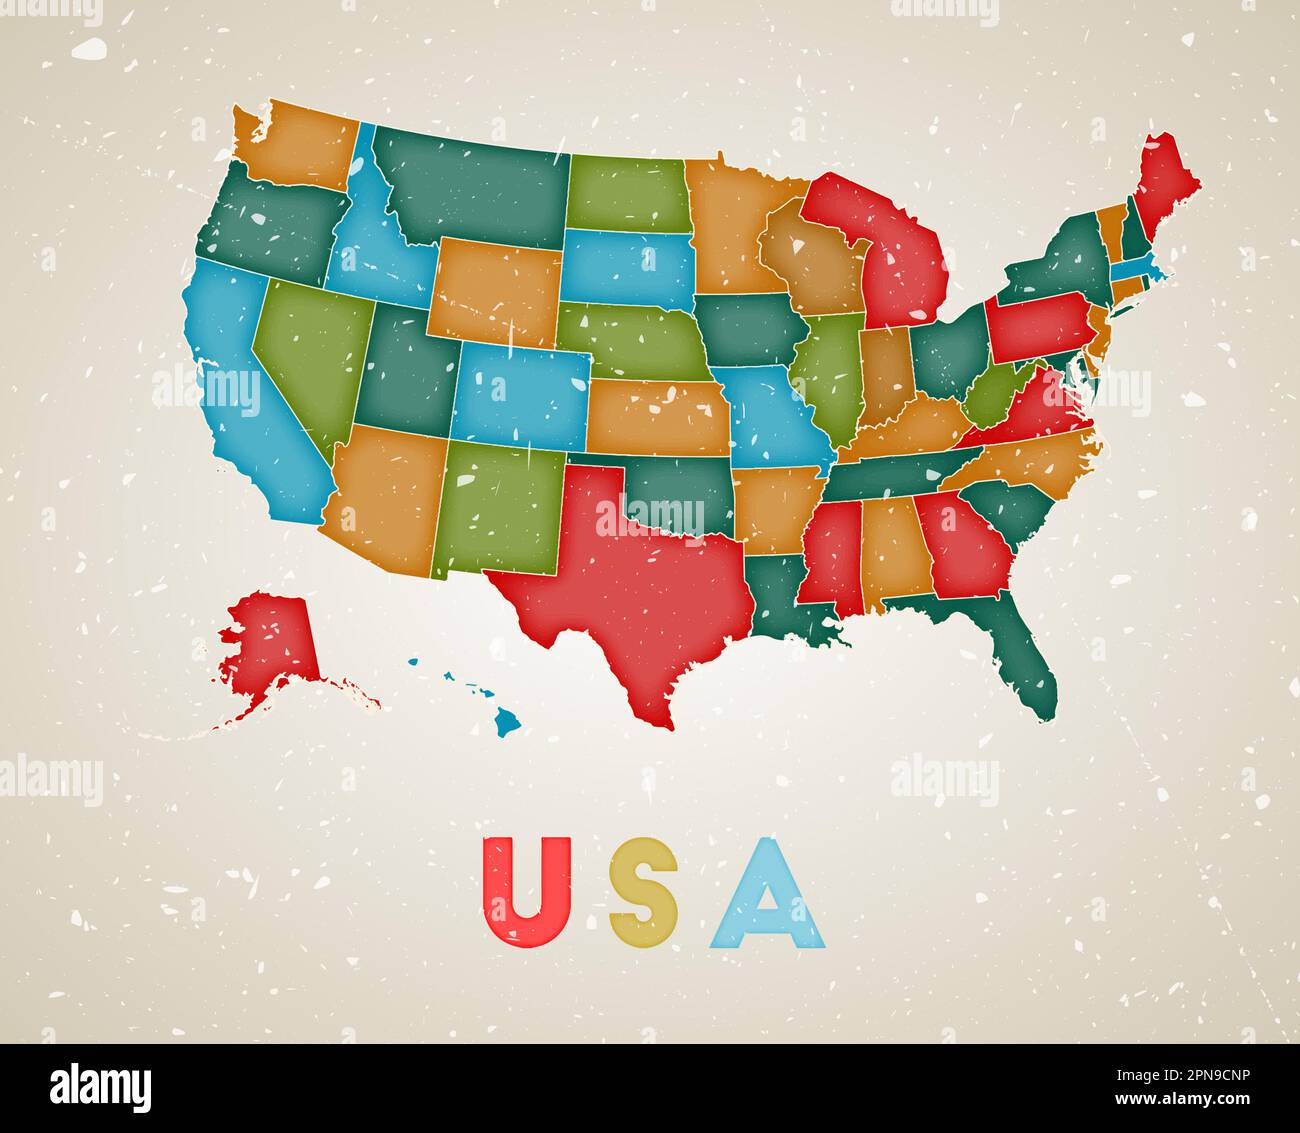 Mappa degli Stati Uniti. Poster del paese con aree colorate. Vecchio grunge texture. Illustrazione vettoriale degli Stati Uniti con il nome del paese. Illustrazione Vettoriale